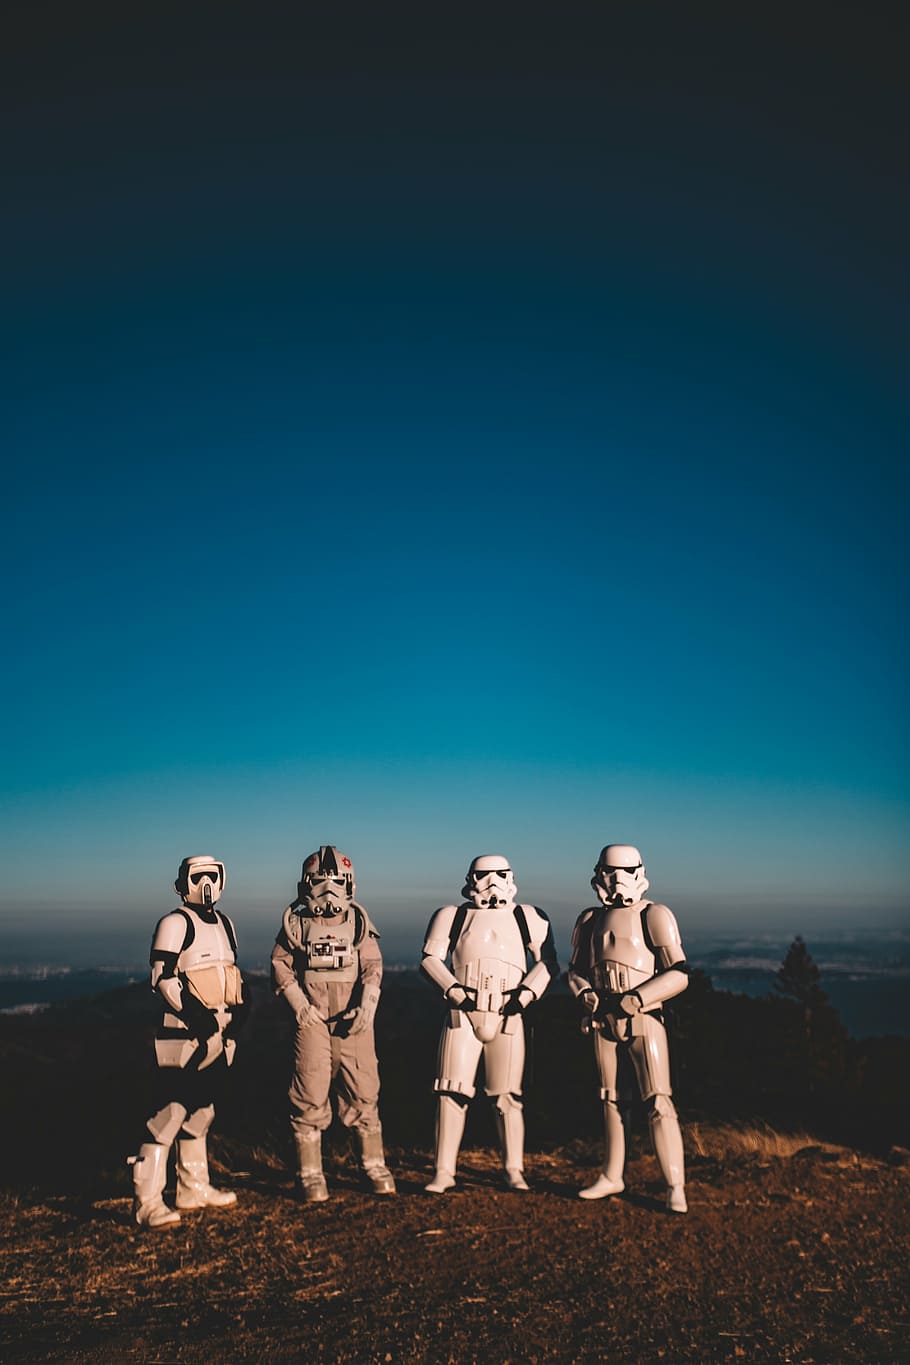 cuatro, cosplay de star wars stormtroopers, de pie, campo, hombre, vistiendo, blanco, estrella, guerras, temática